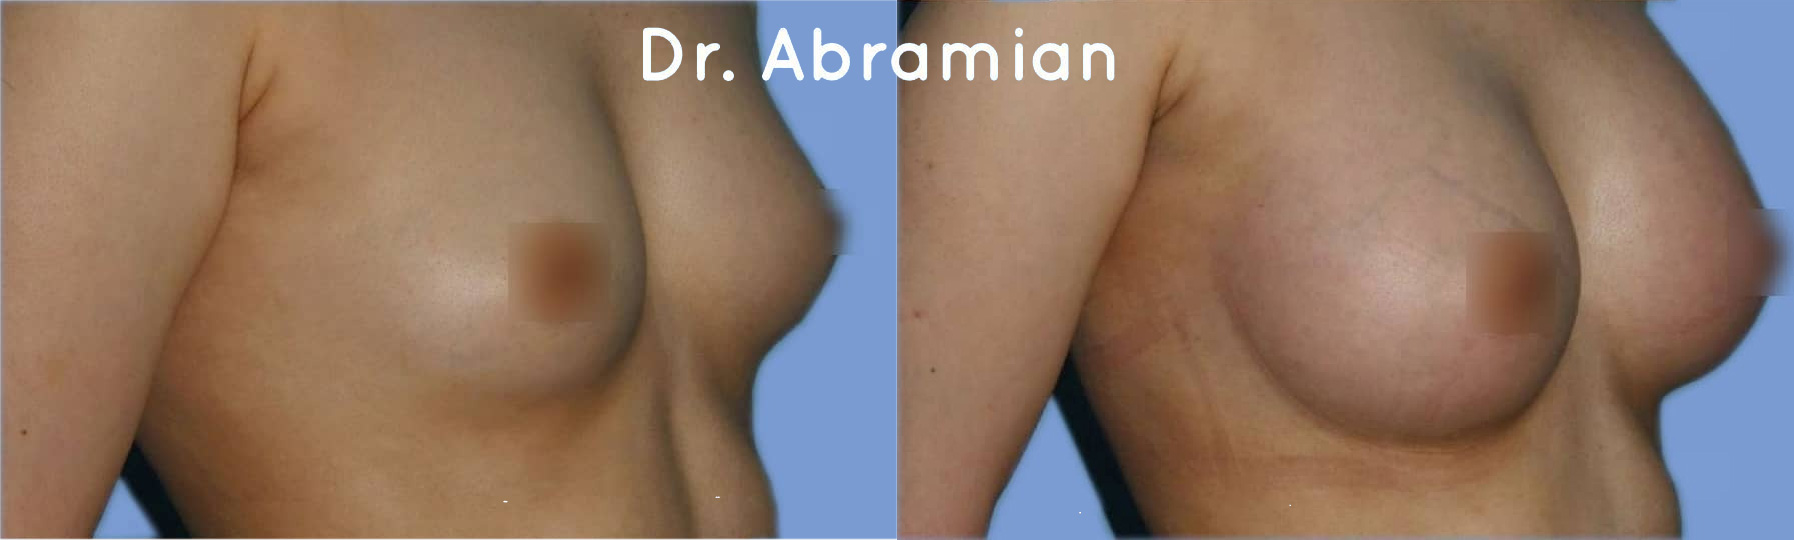 Эндоскопическое увеличение груди имплантами 300 мл, фото до и после